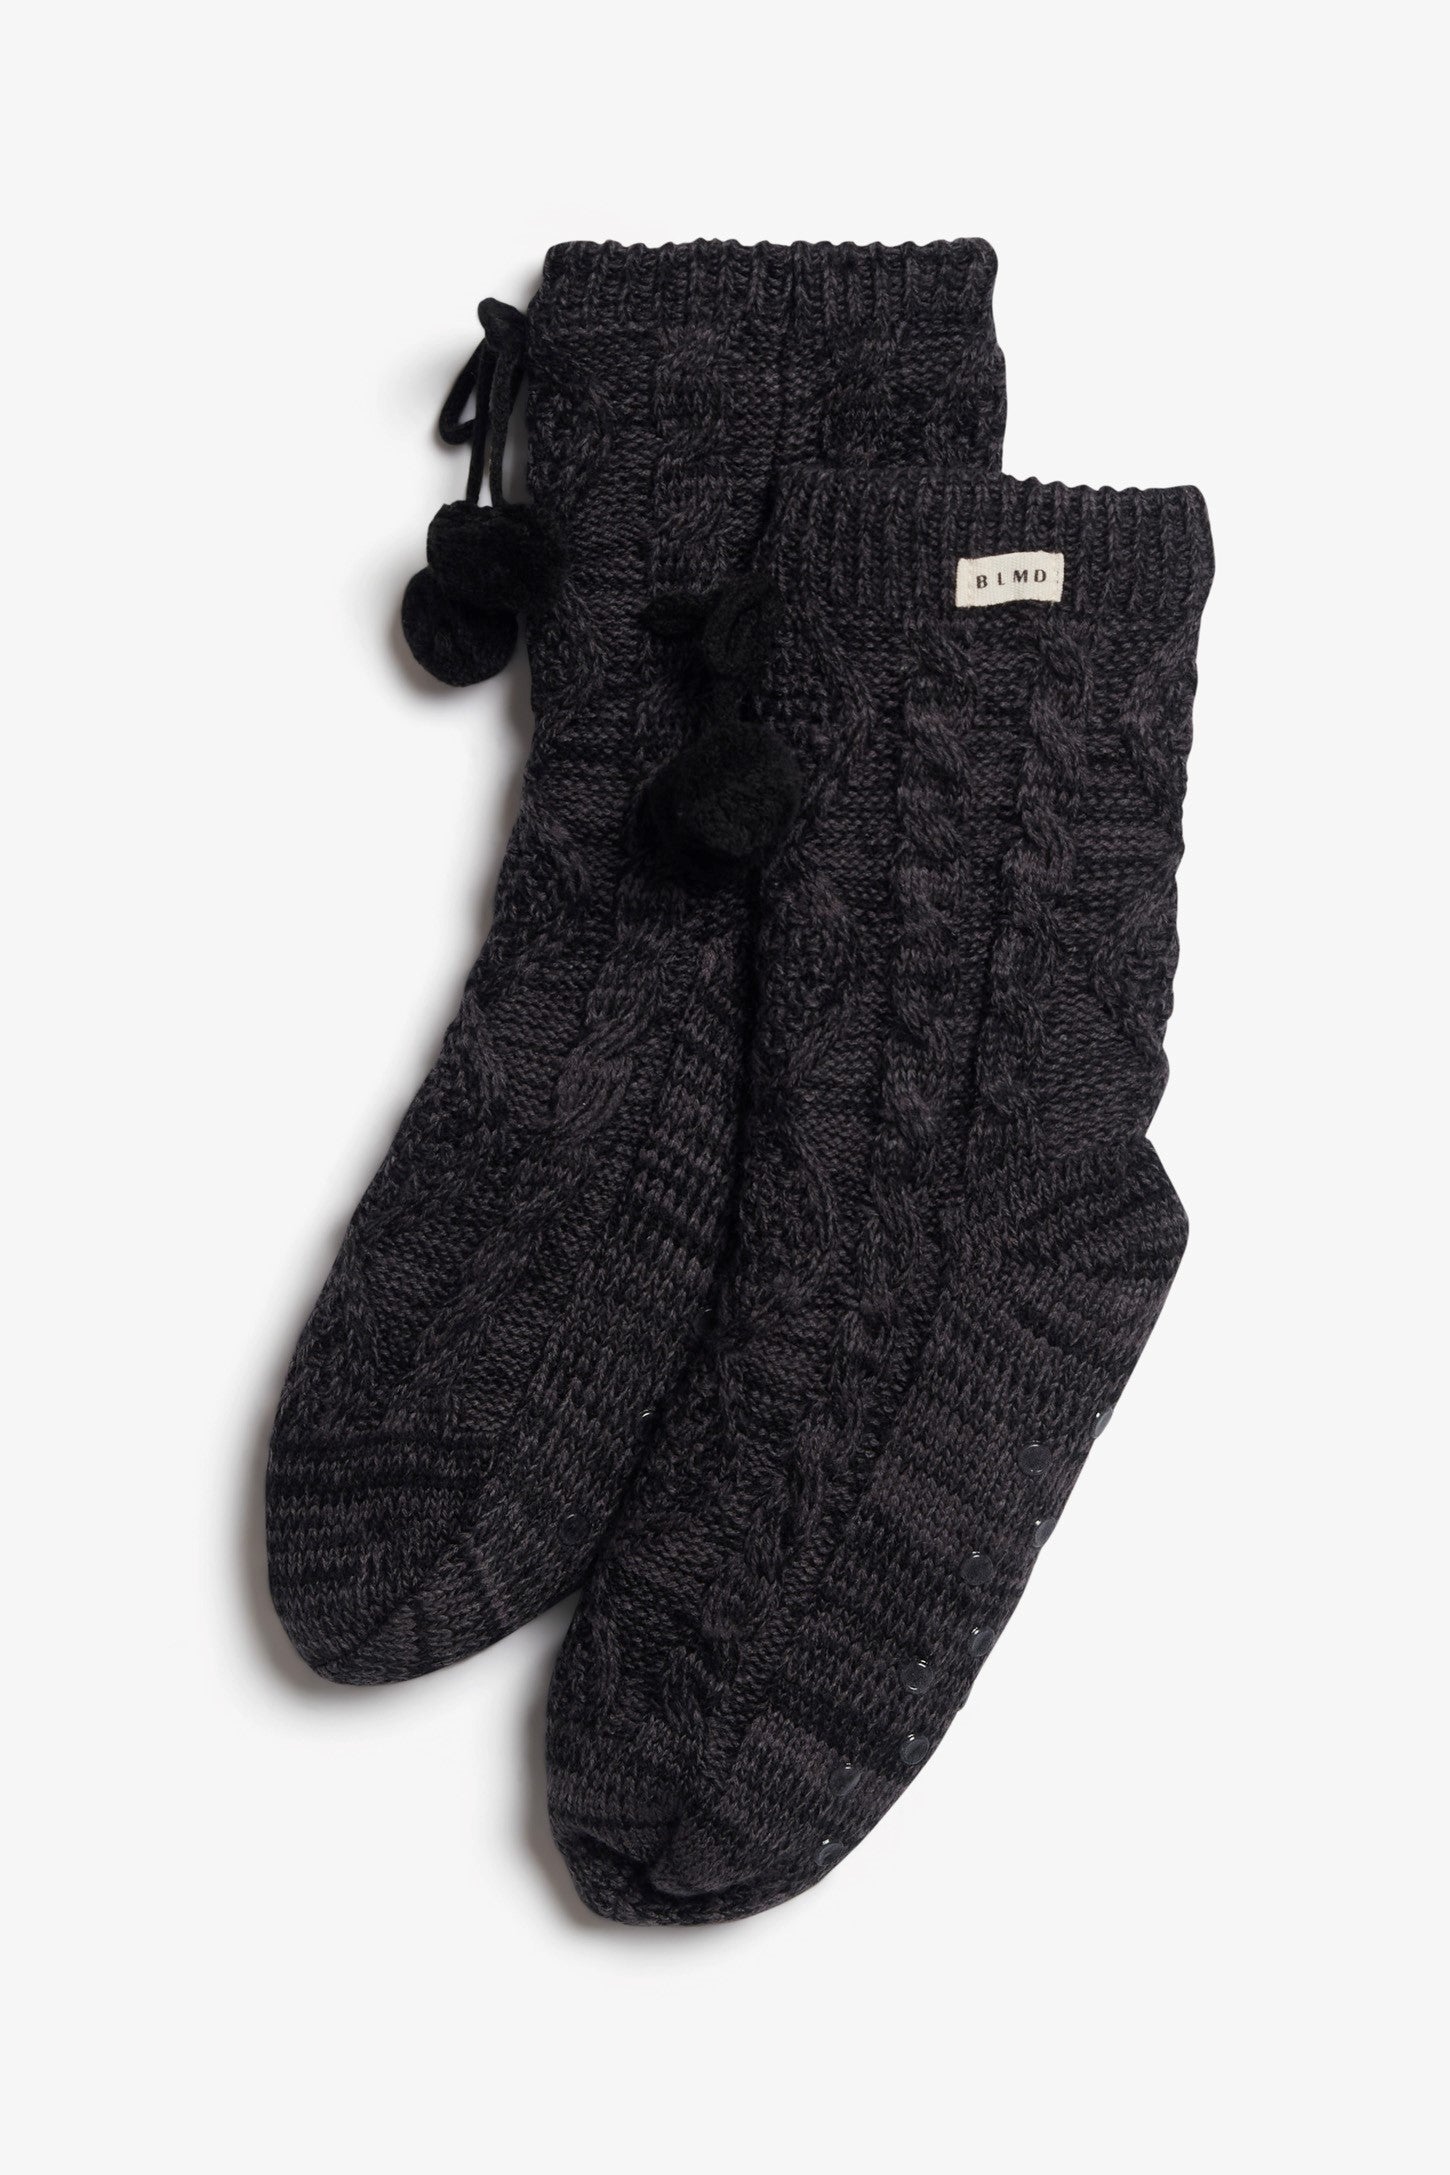 Chaussettes en tricot câblé et sherpa, 2/20$ - Ado fille && NOIR MIXTE